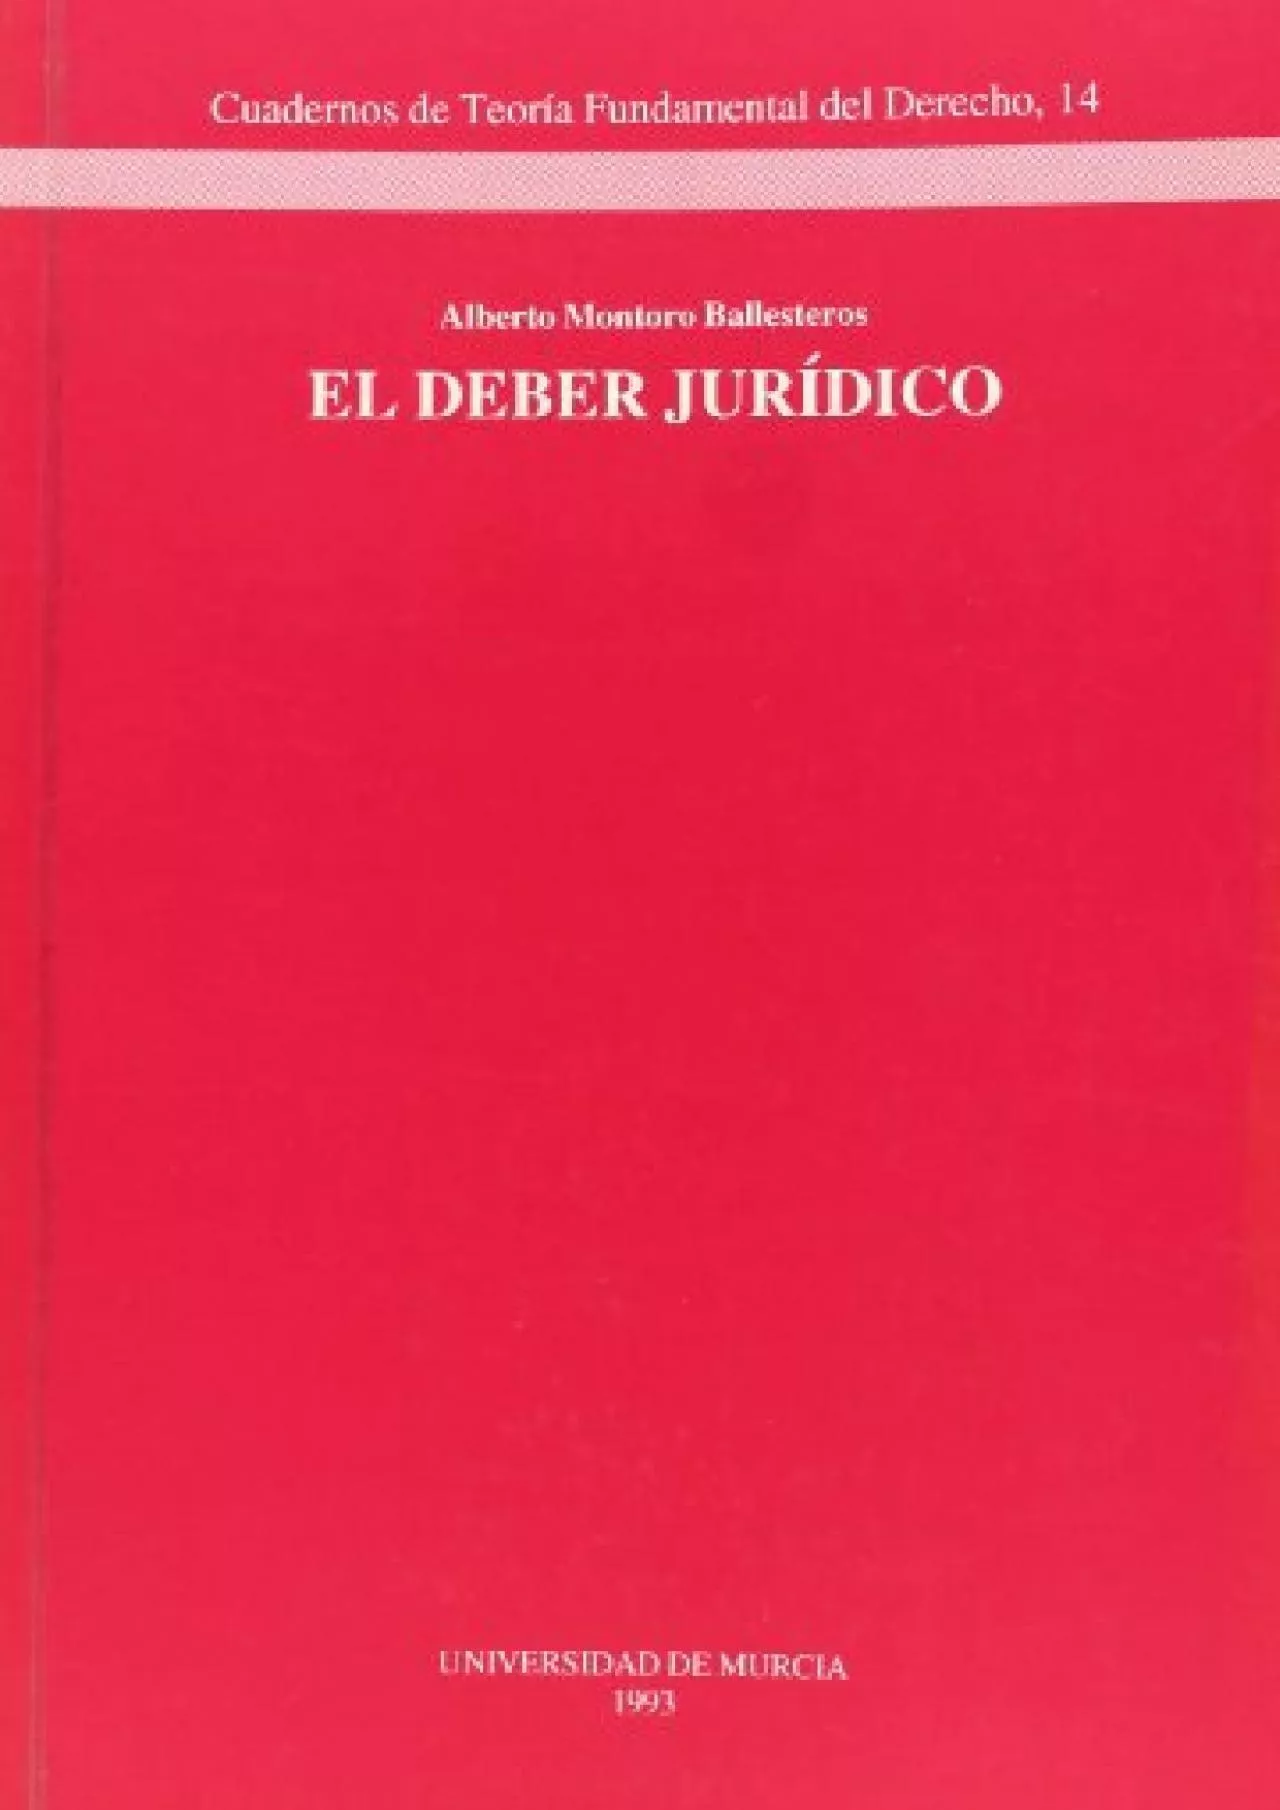 [READ DOWNLOAD] Deber Juridico, El (Spanish Edition)